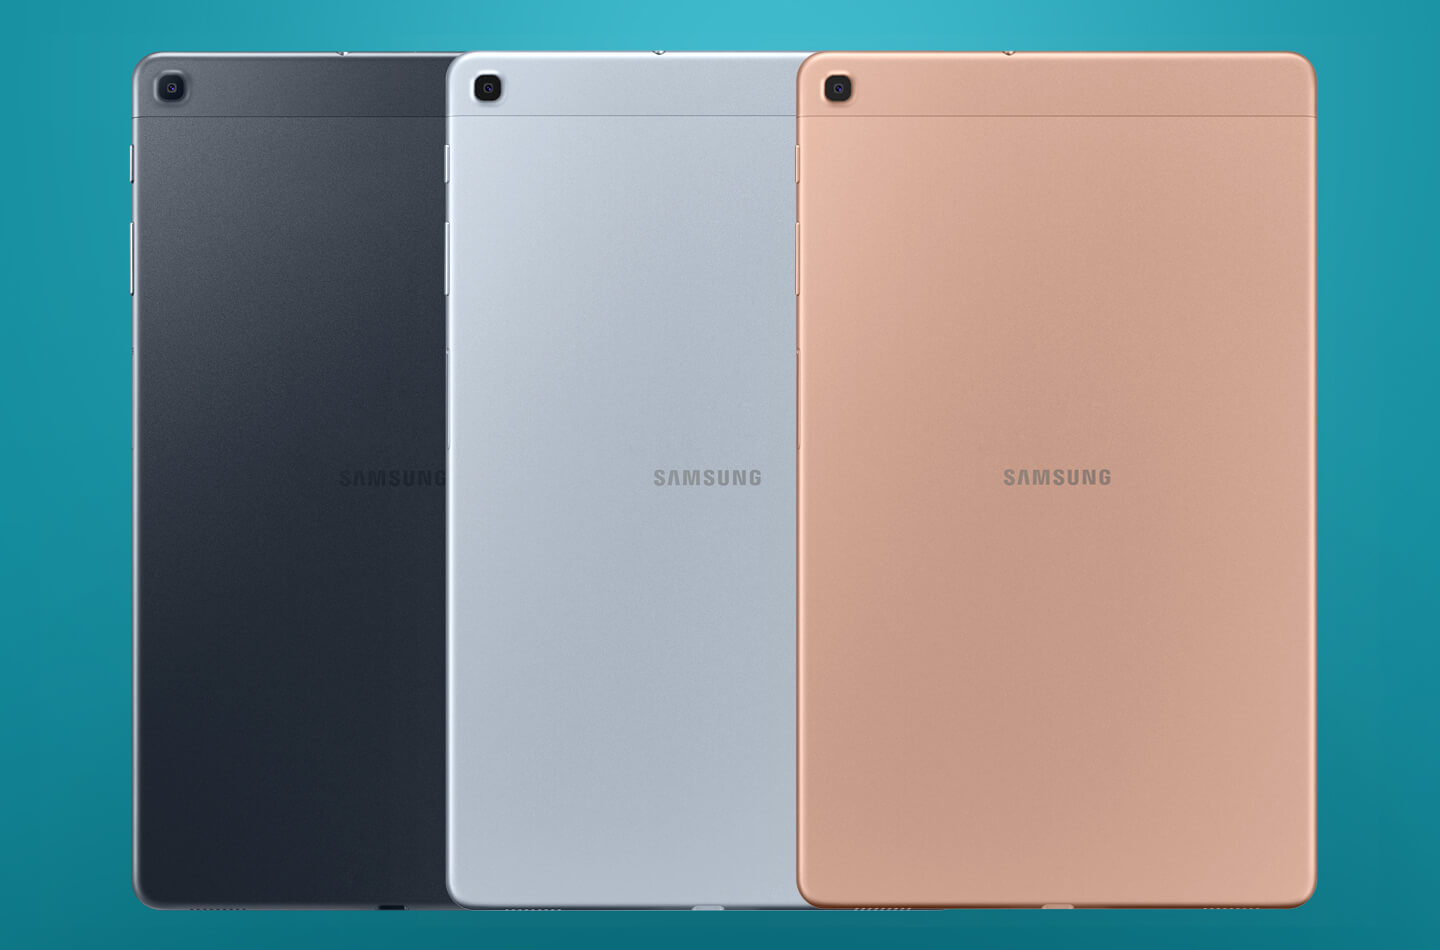 Definitief bijwoord Wonderbaarlijk Samsung Galaxy Tab A 2019 is een goedkope tablet voor kids | LetsGoMobile